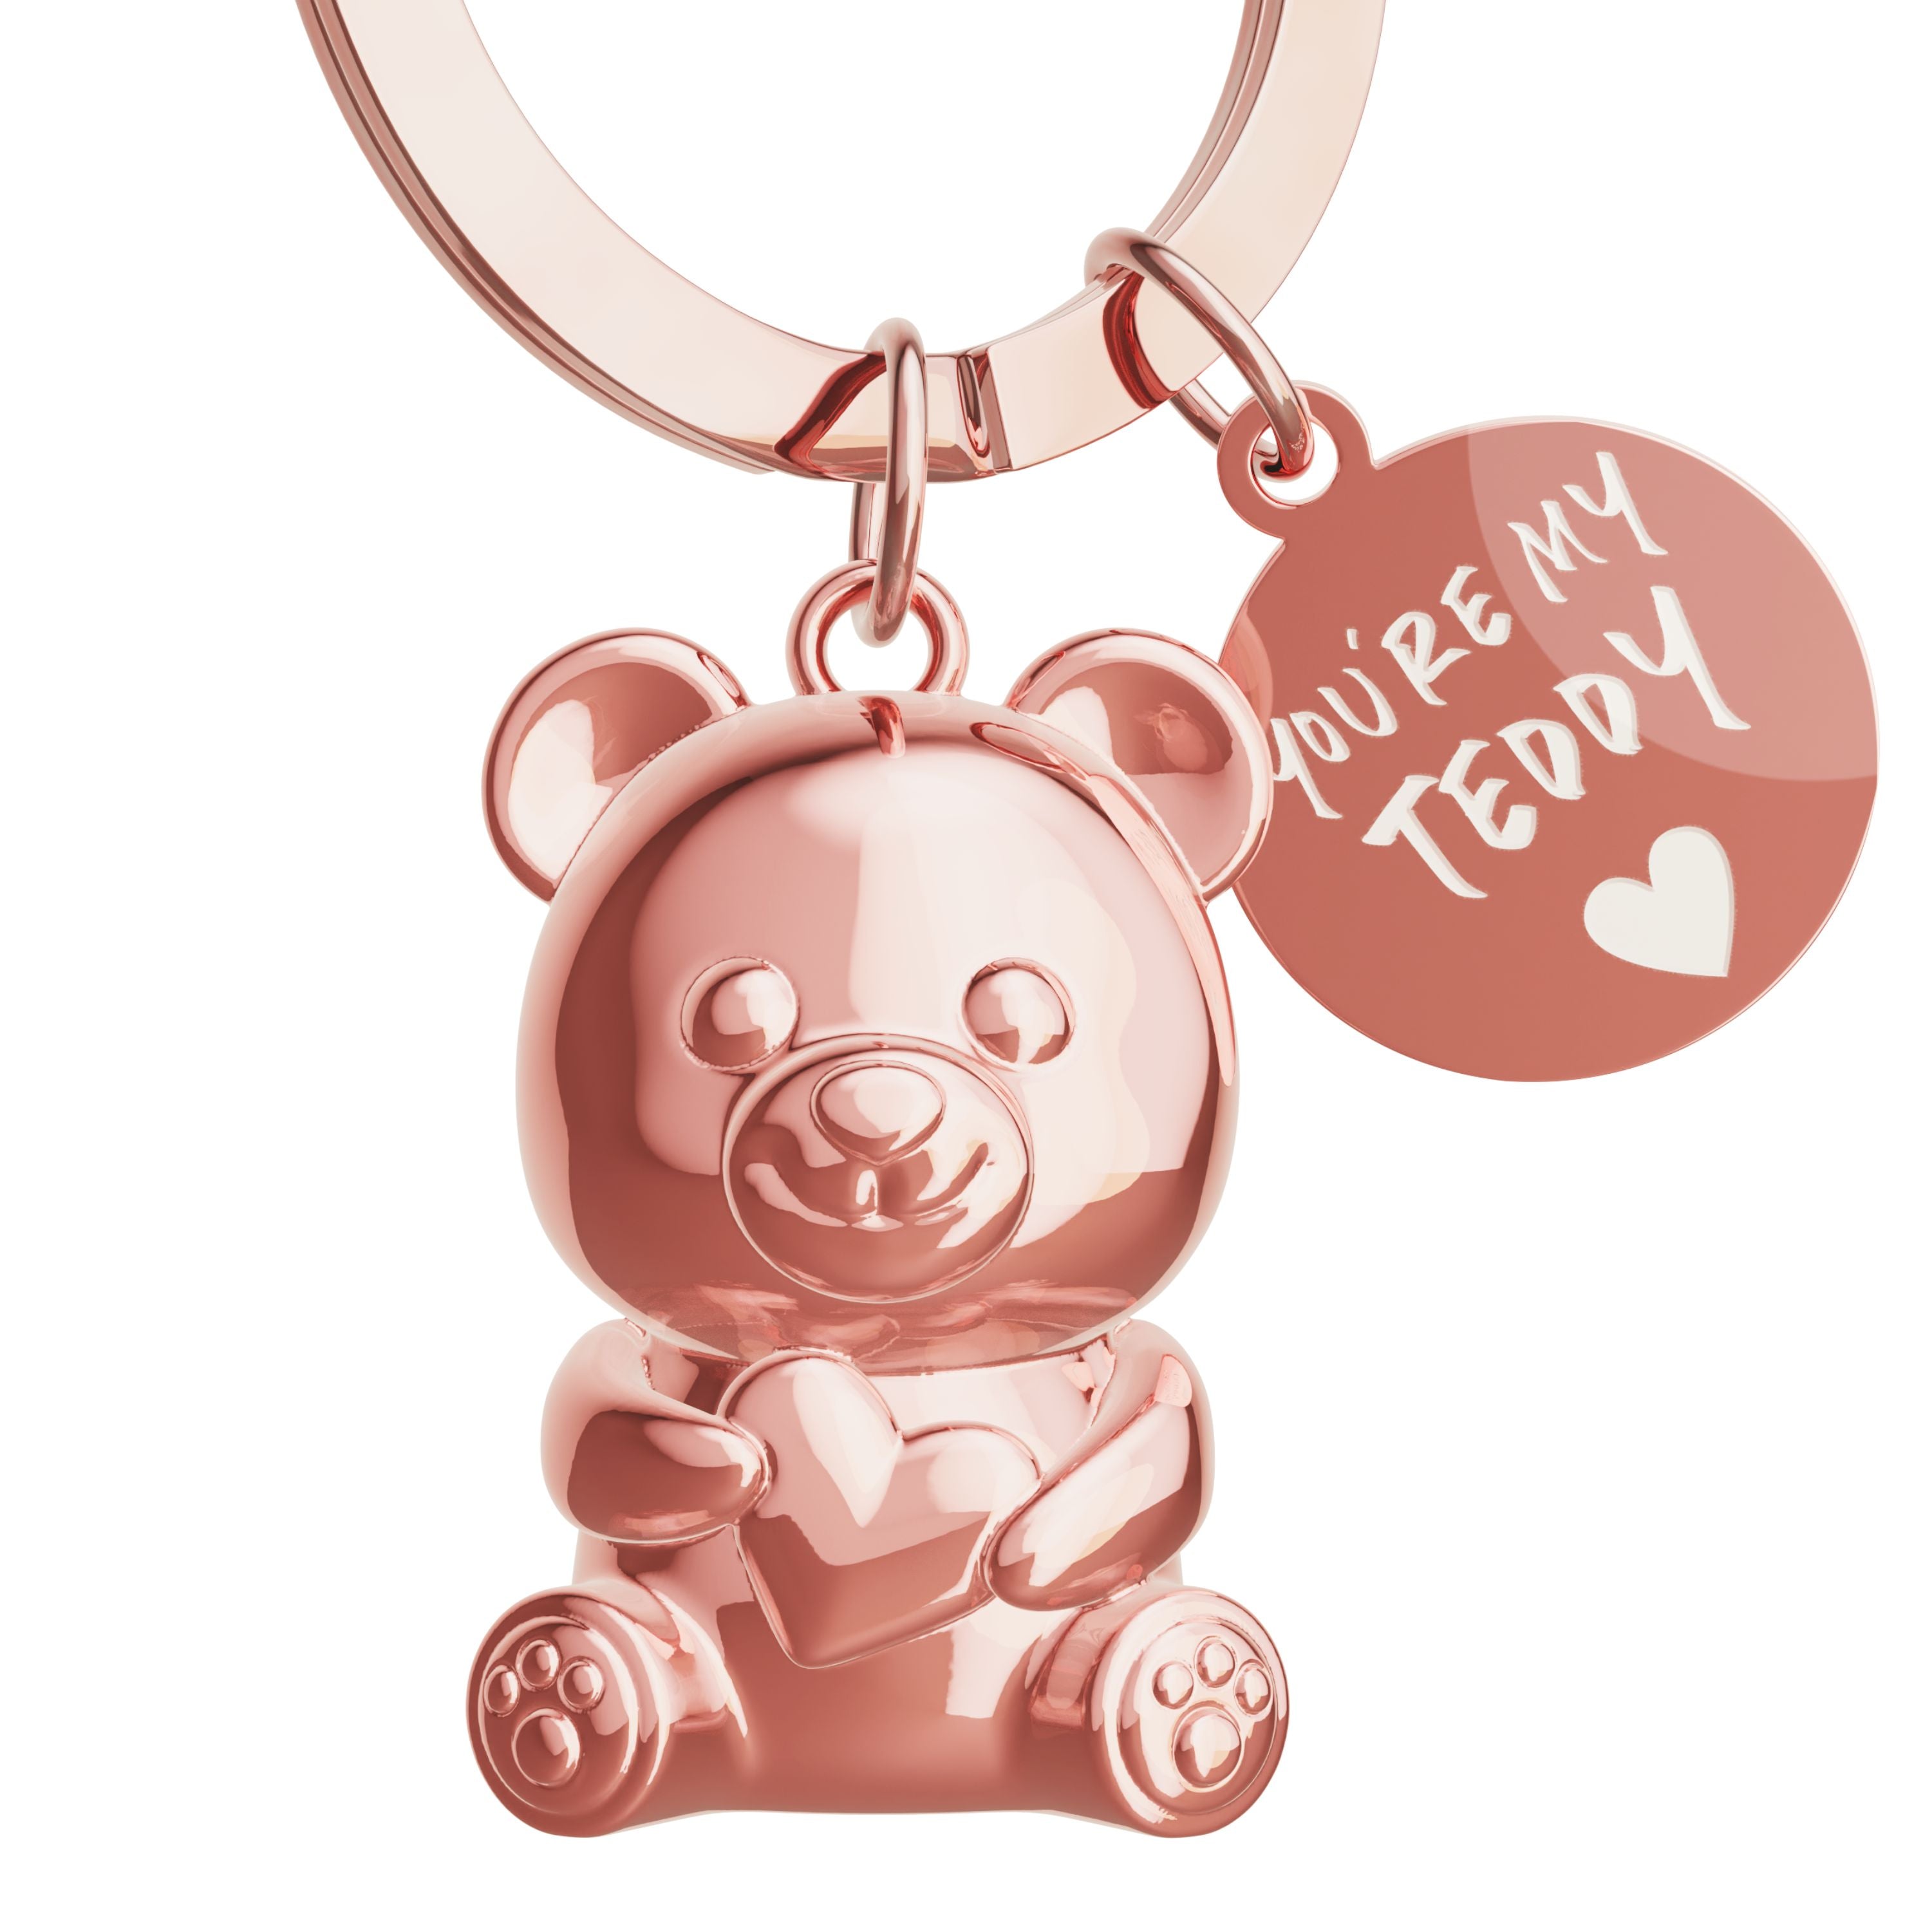 Teddybär Schlüsselanhänger in roségold mit Anhängerplättchen mit Gravur "You're my Teddy"